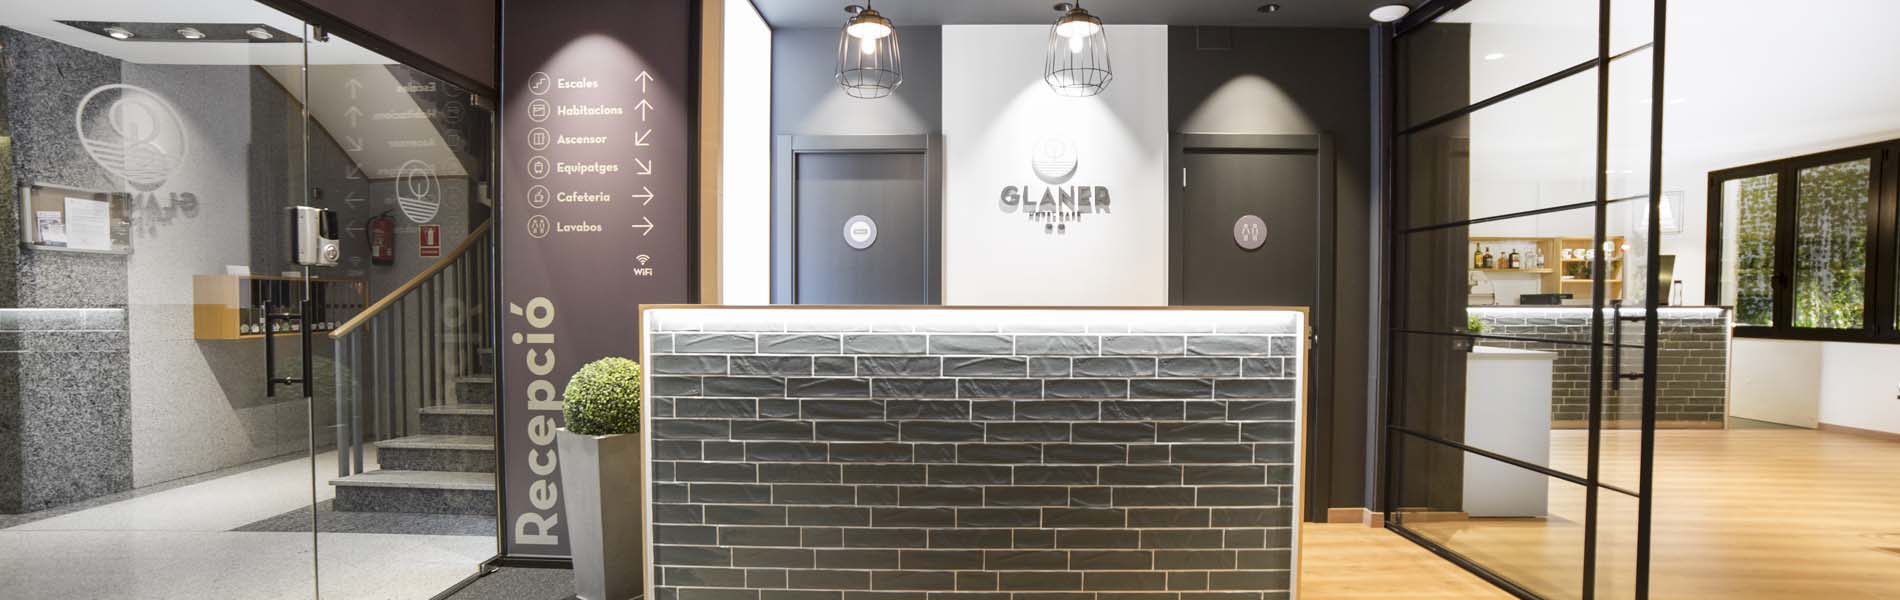 Glaner Hotel Café  header